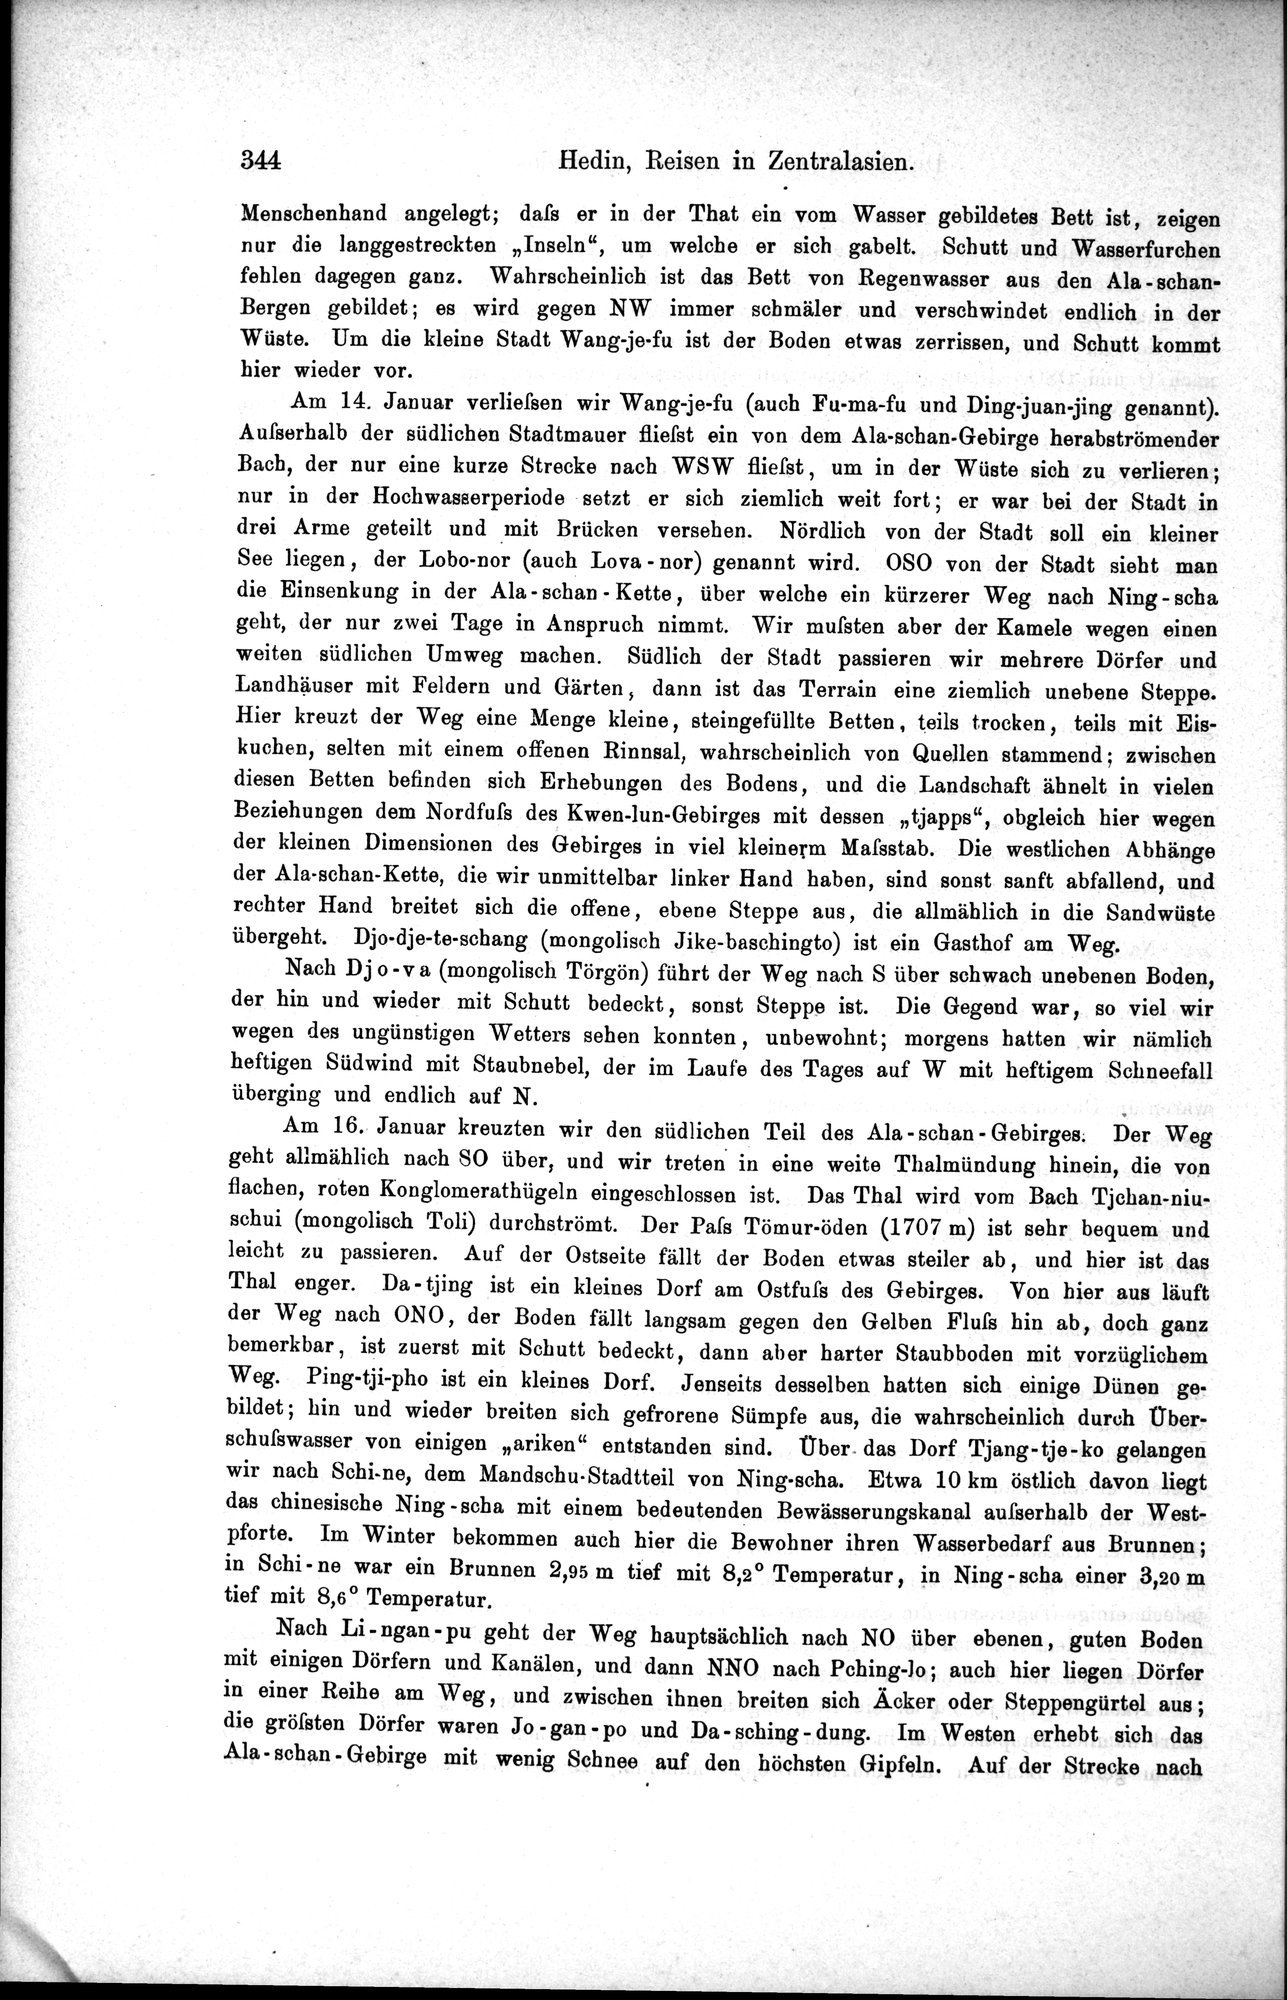 Die Geographische-Wissenschaftlichen Ergebnisse meiner Reisen in Zentralasien, 1894-1897 : vol.1 / Page 356 (Grayscale High Resolution Image)